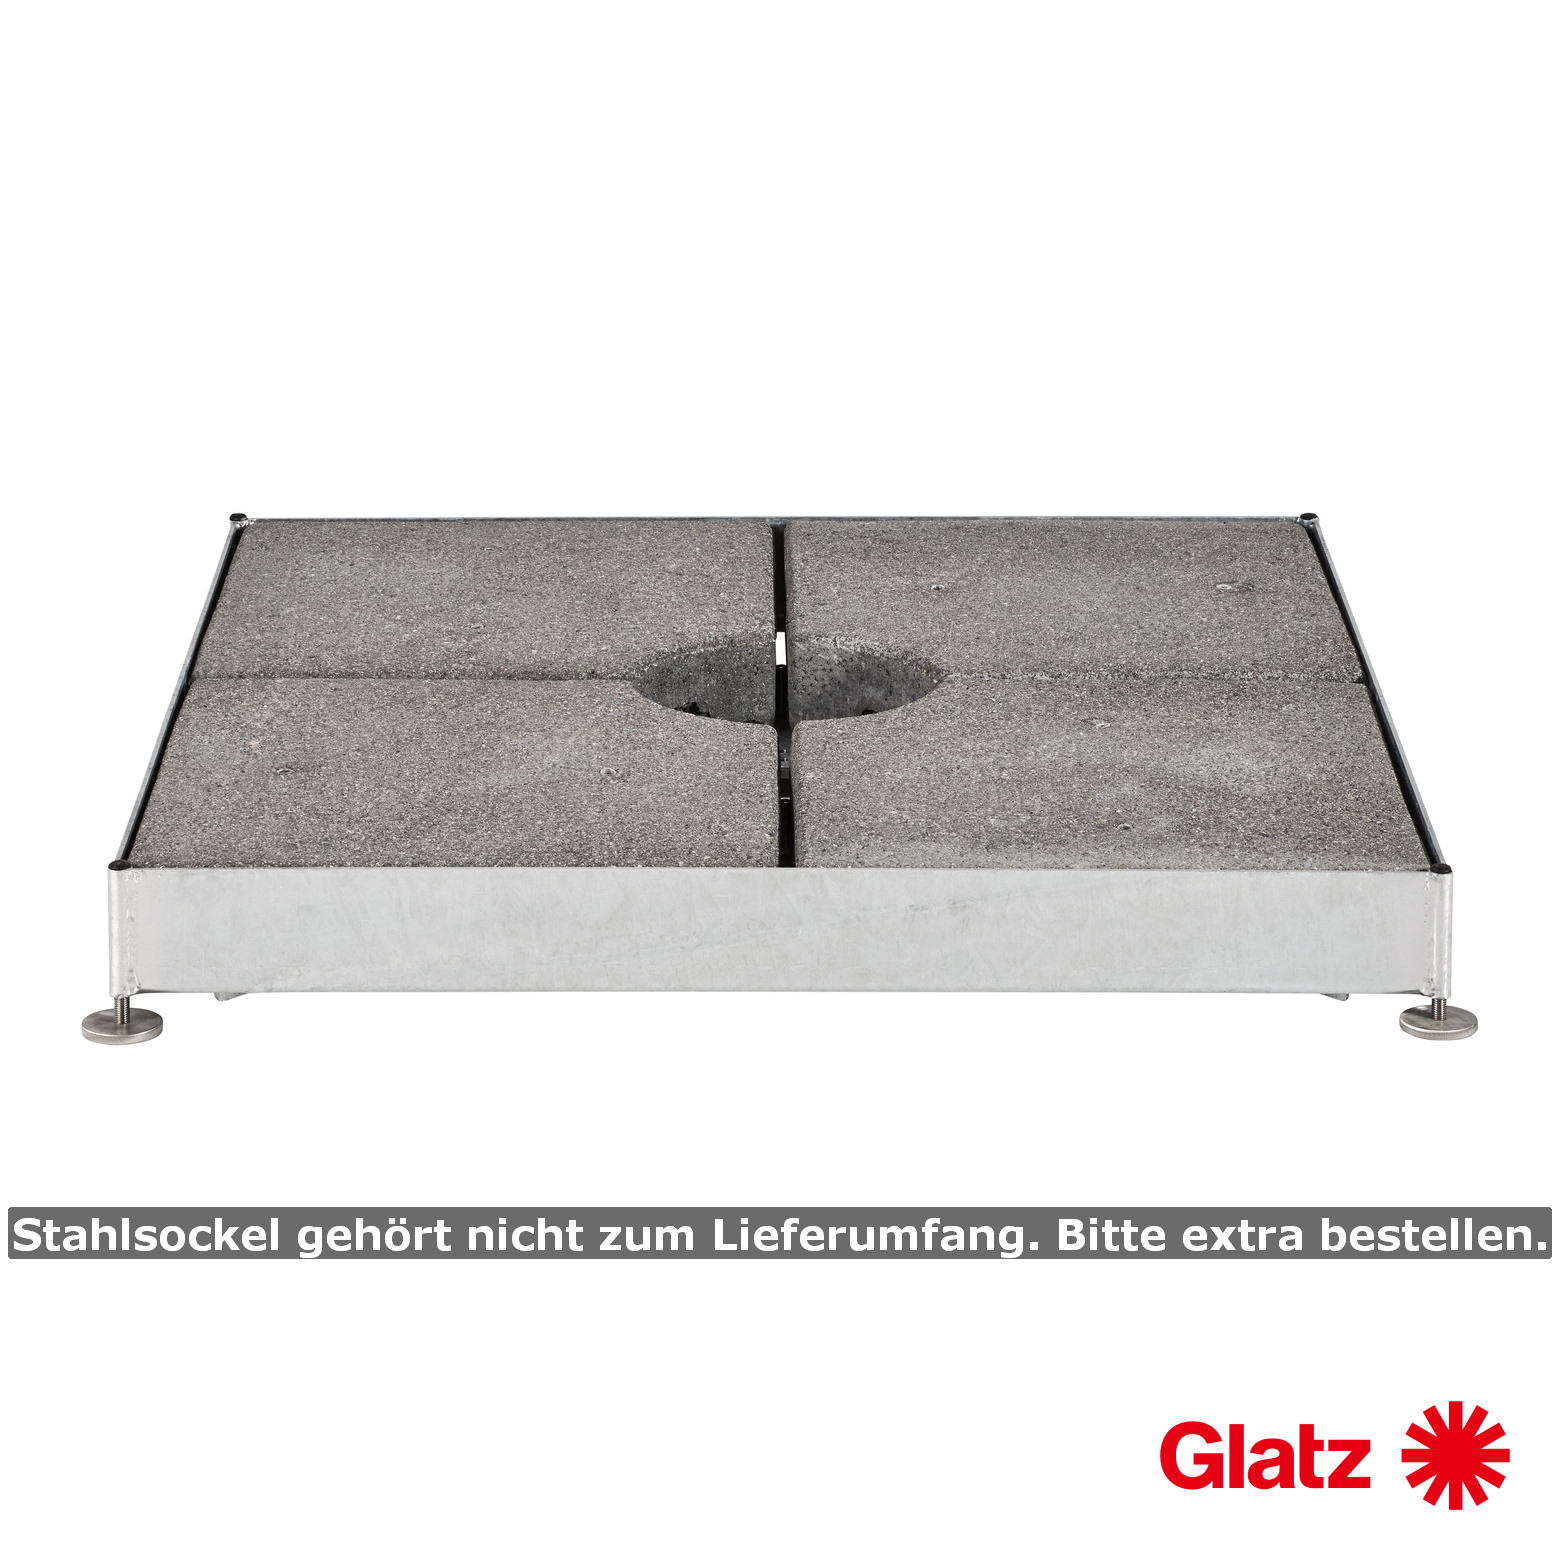 Glatz Betonelement-Set, 4 x 48kg, 48.3x48.3x9.4cm